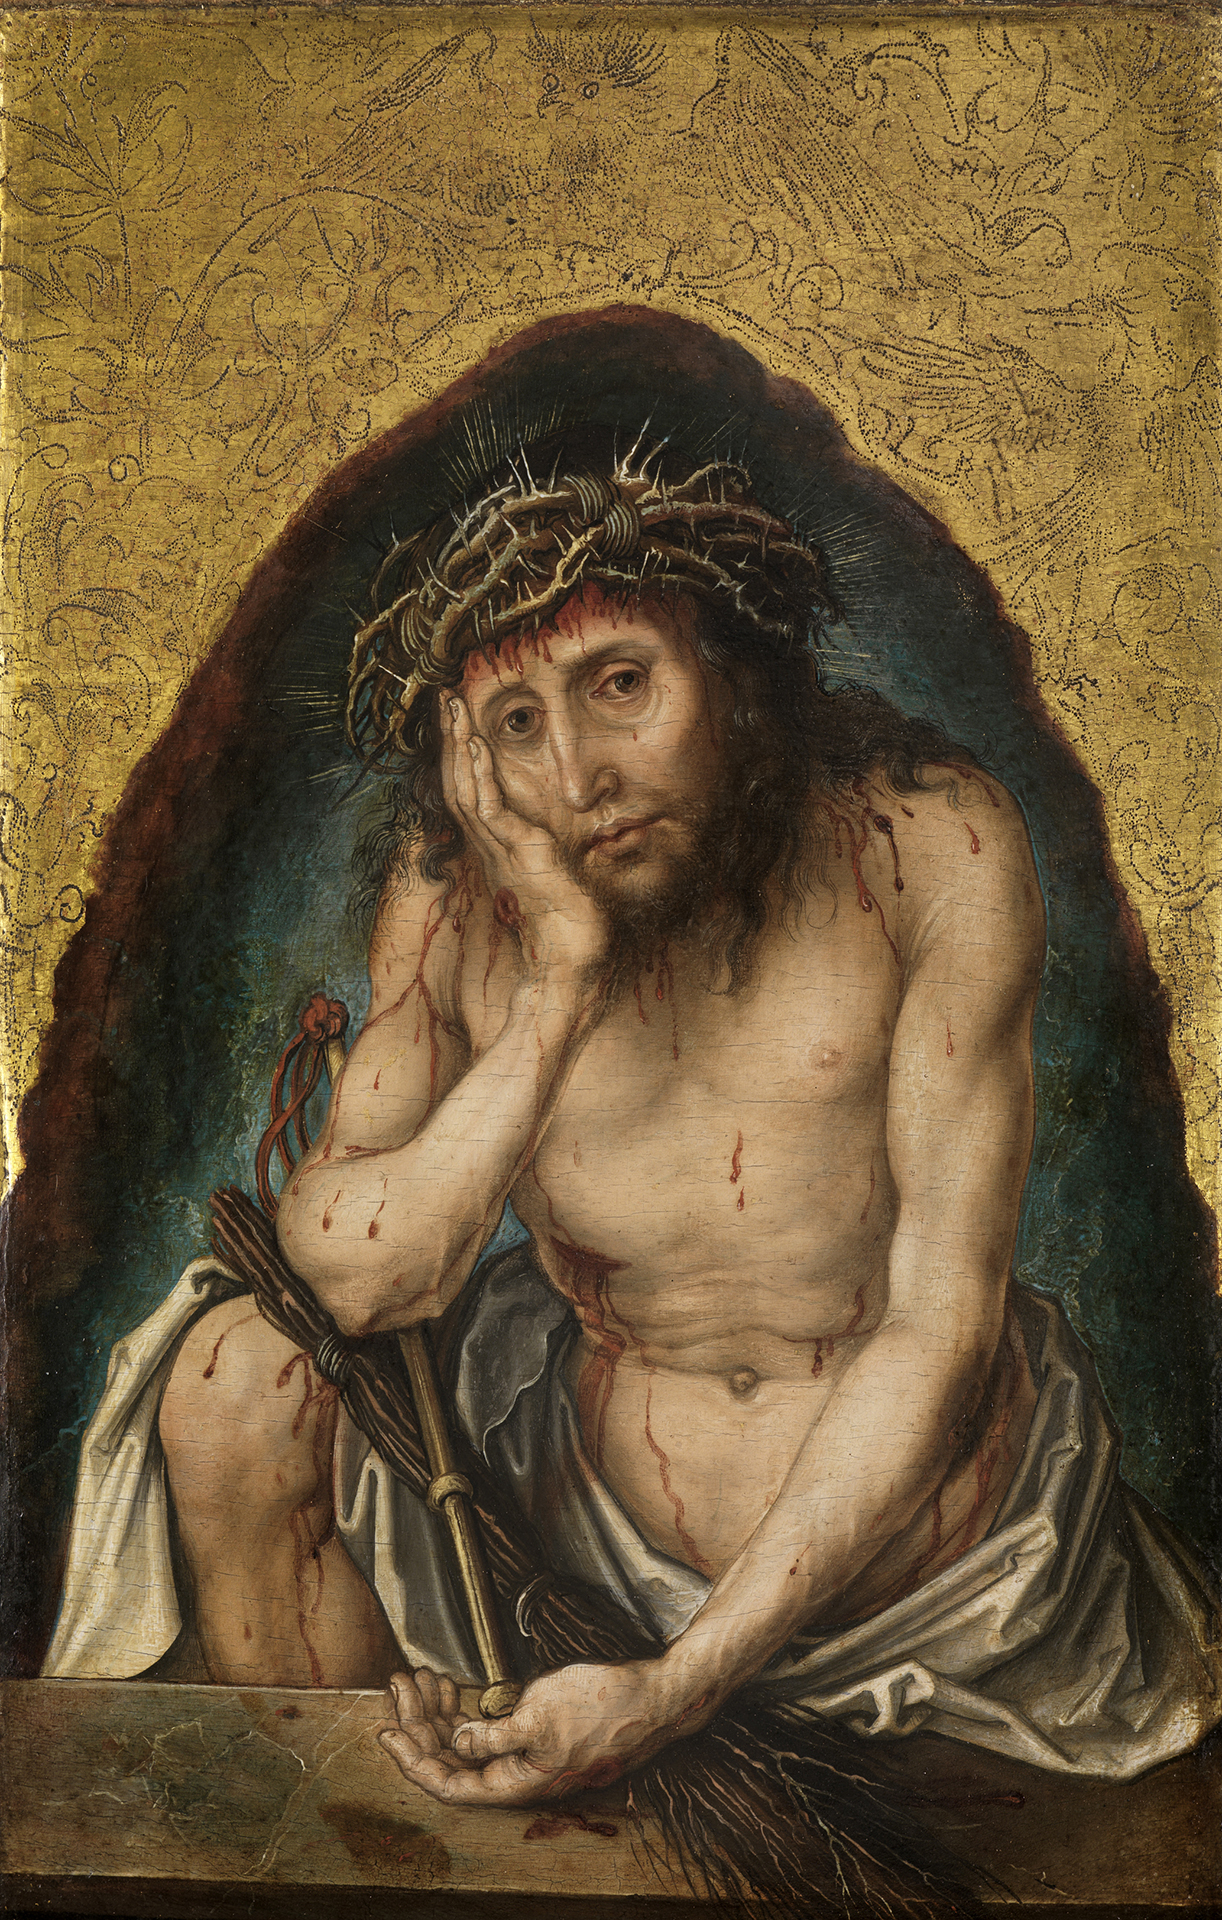 Gemälde Dürers: Christus als Schmerzensmann. Es zeigt Jesus wie er den Kopf auf seine Hand stützt und traurig guckt. Er trägt eine Dornenkrone und einen Lendenschurz.